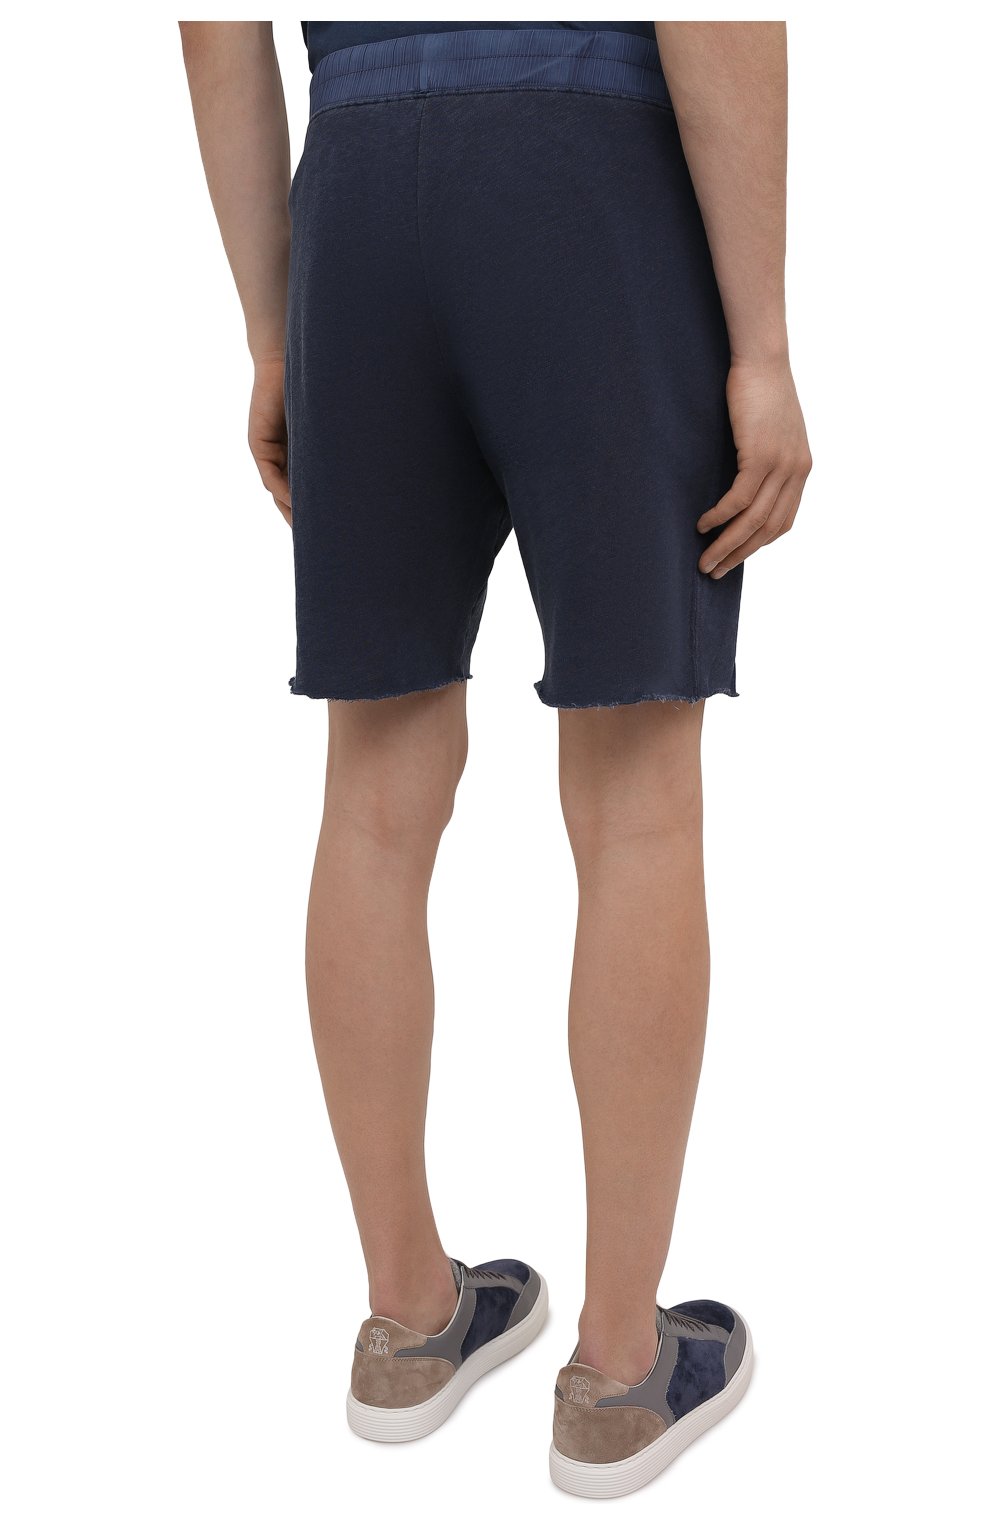 Мужские хлопковые шорты JAMES PERSE темно-синего цвета, арт. MXA4238 | Фото 4 (Длина Шорты М: До колена; Случай: Повседневный; Материал внешний: Хлопок; Стили: Спорт-шик)